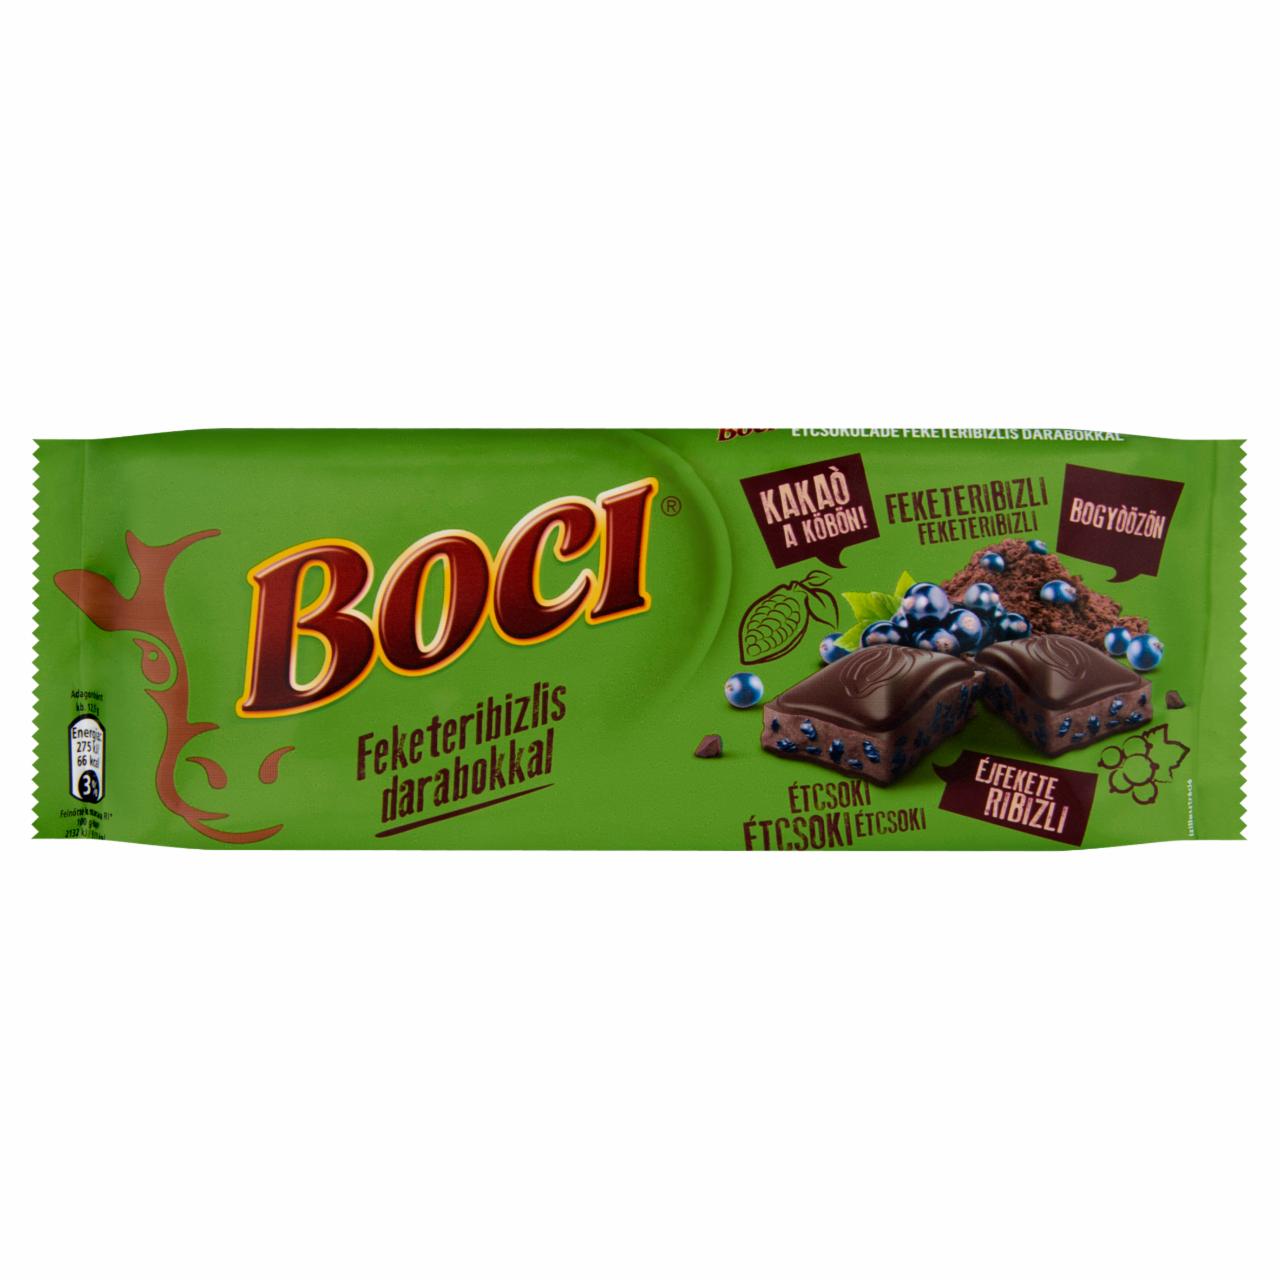 Képek - Boci étcsokoládé feketeribizlis darabokkal 90 g